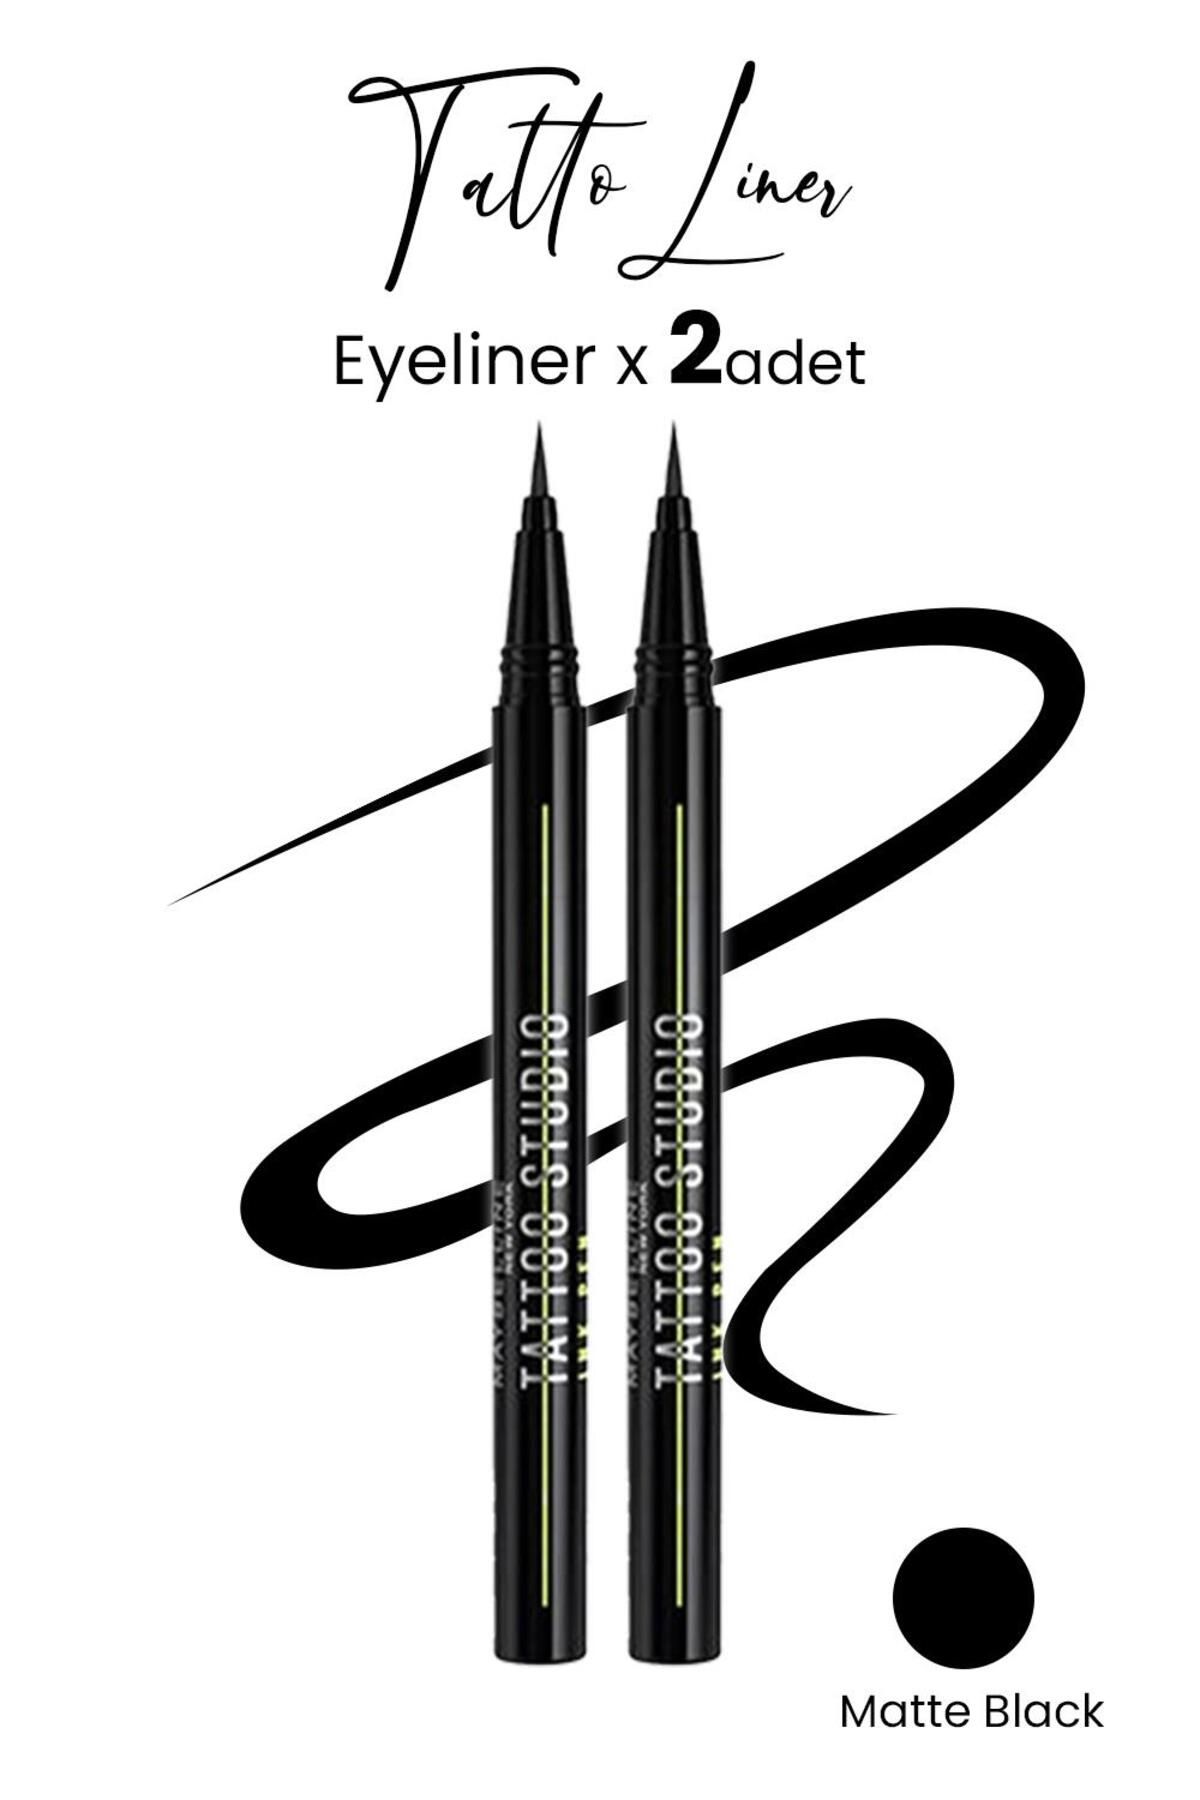 Maybelline New York Maybelline Tattoo Liner Ink Pen Eyeliner - Matte Black X 2 Adet